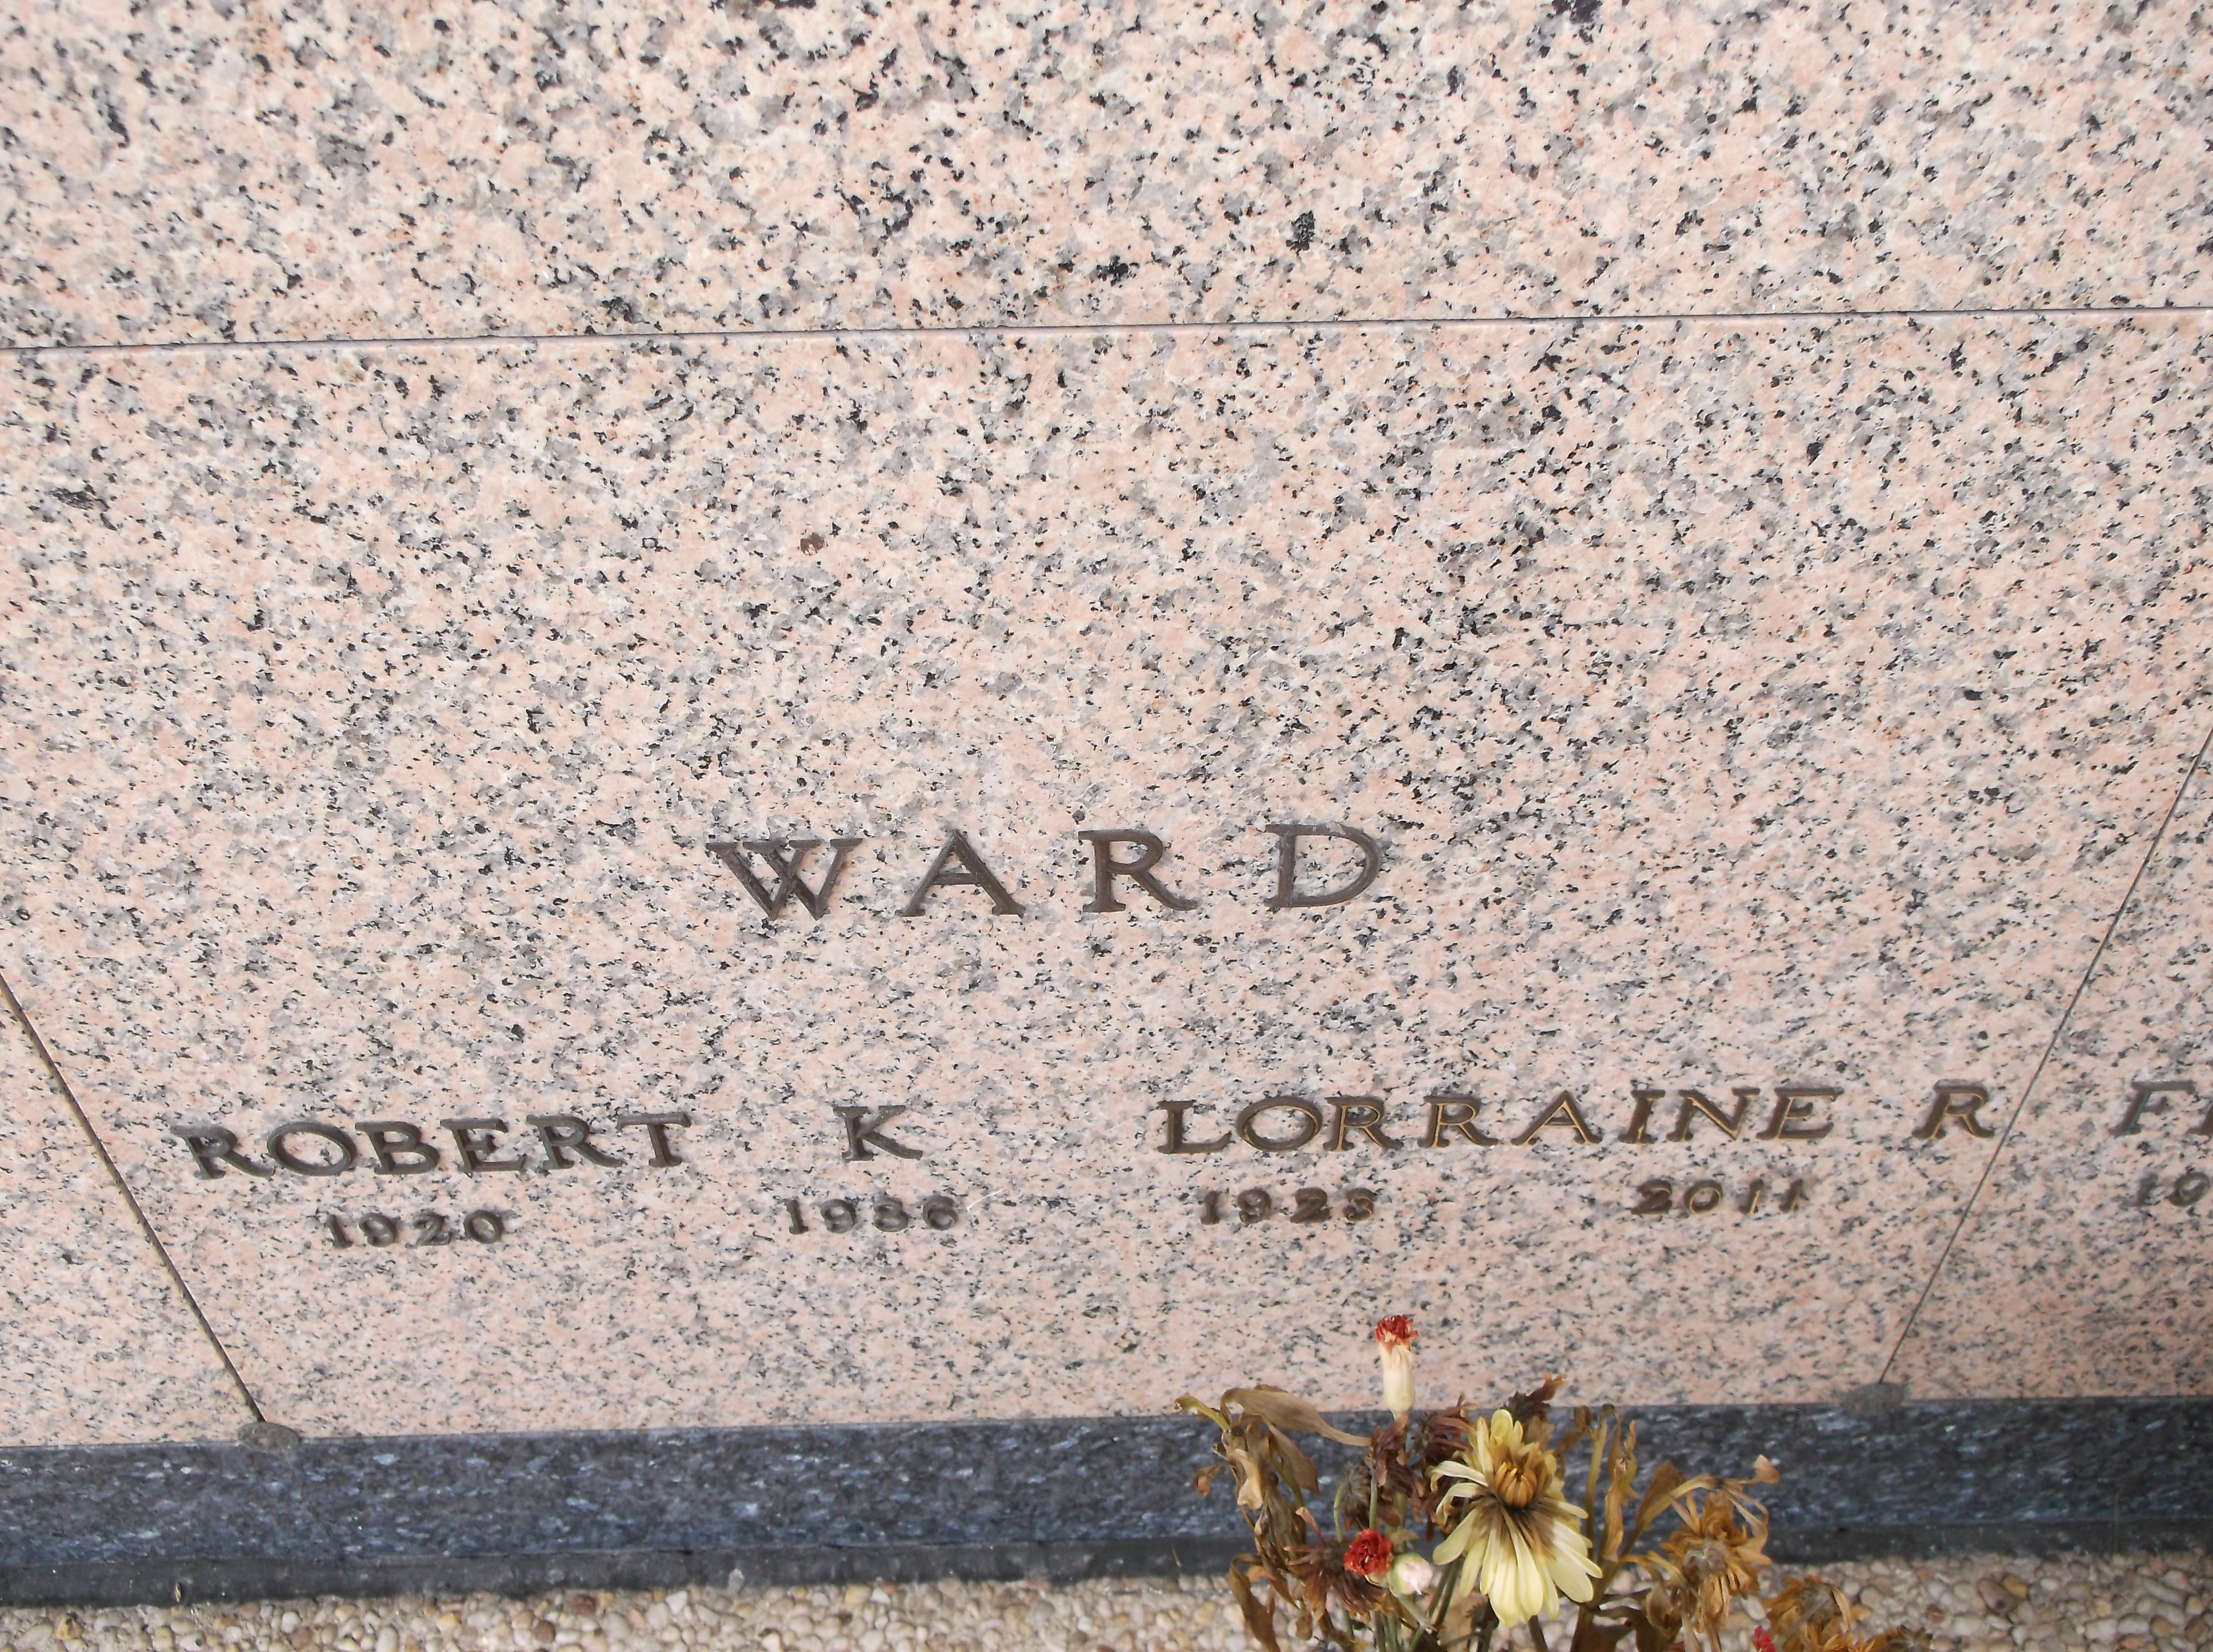 Lorraine R Ward